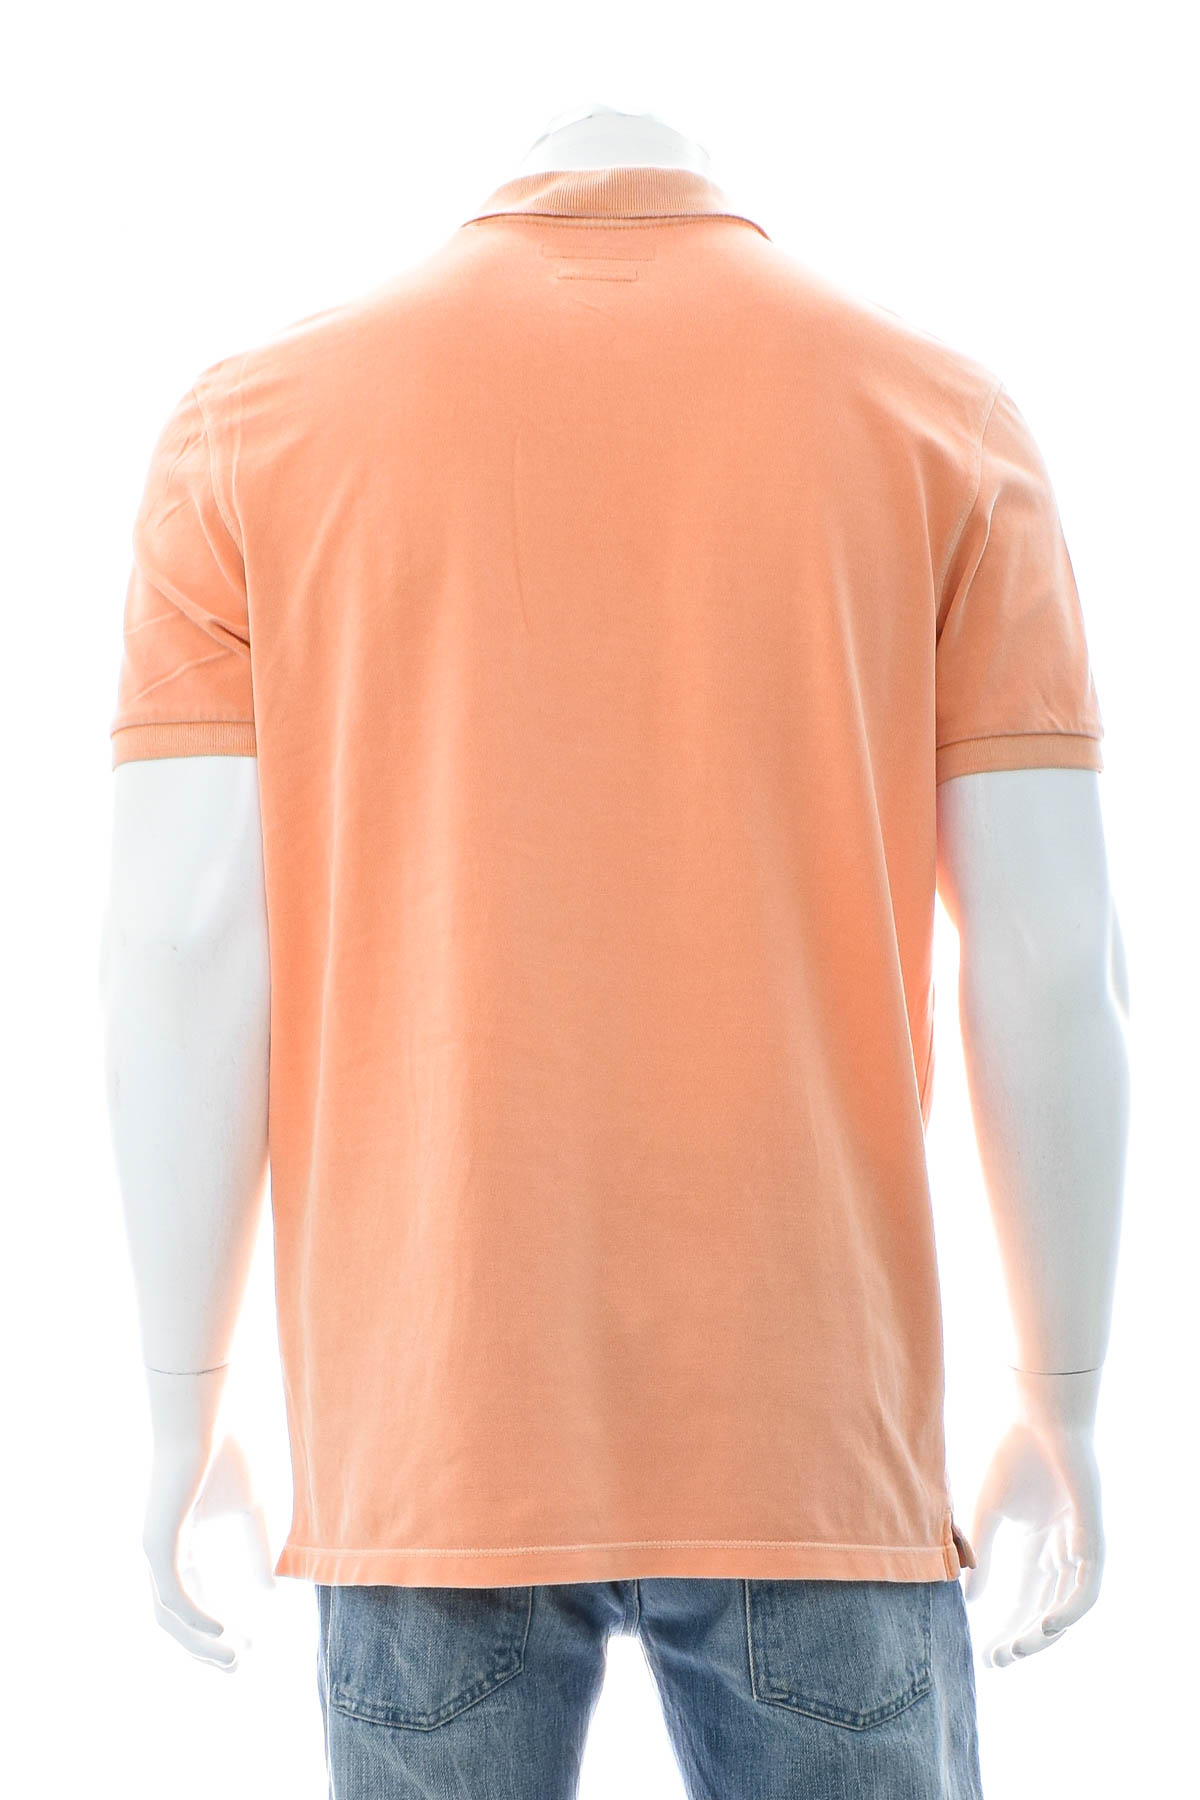 Men's T-shirt - Marc O' Polo - 1